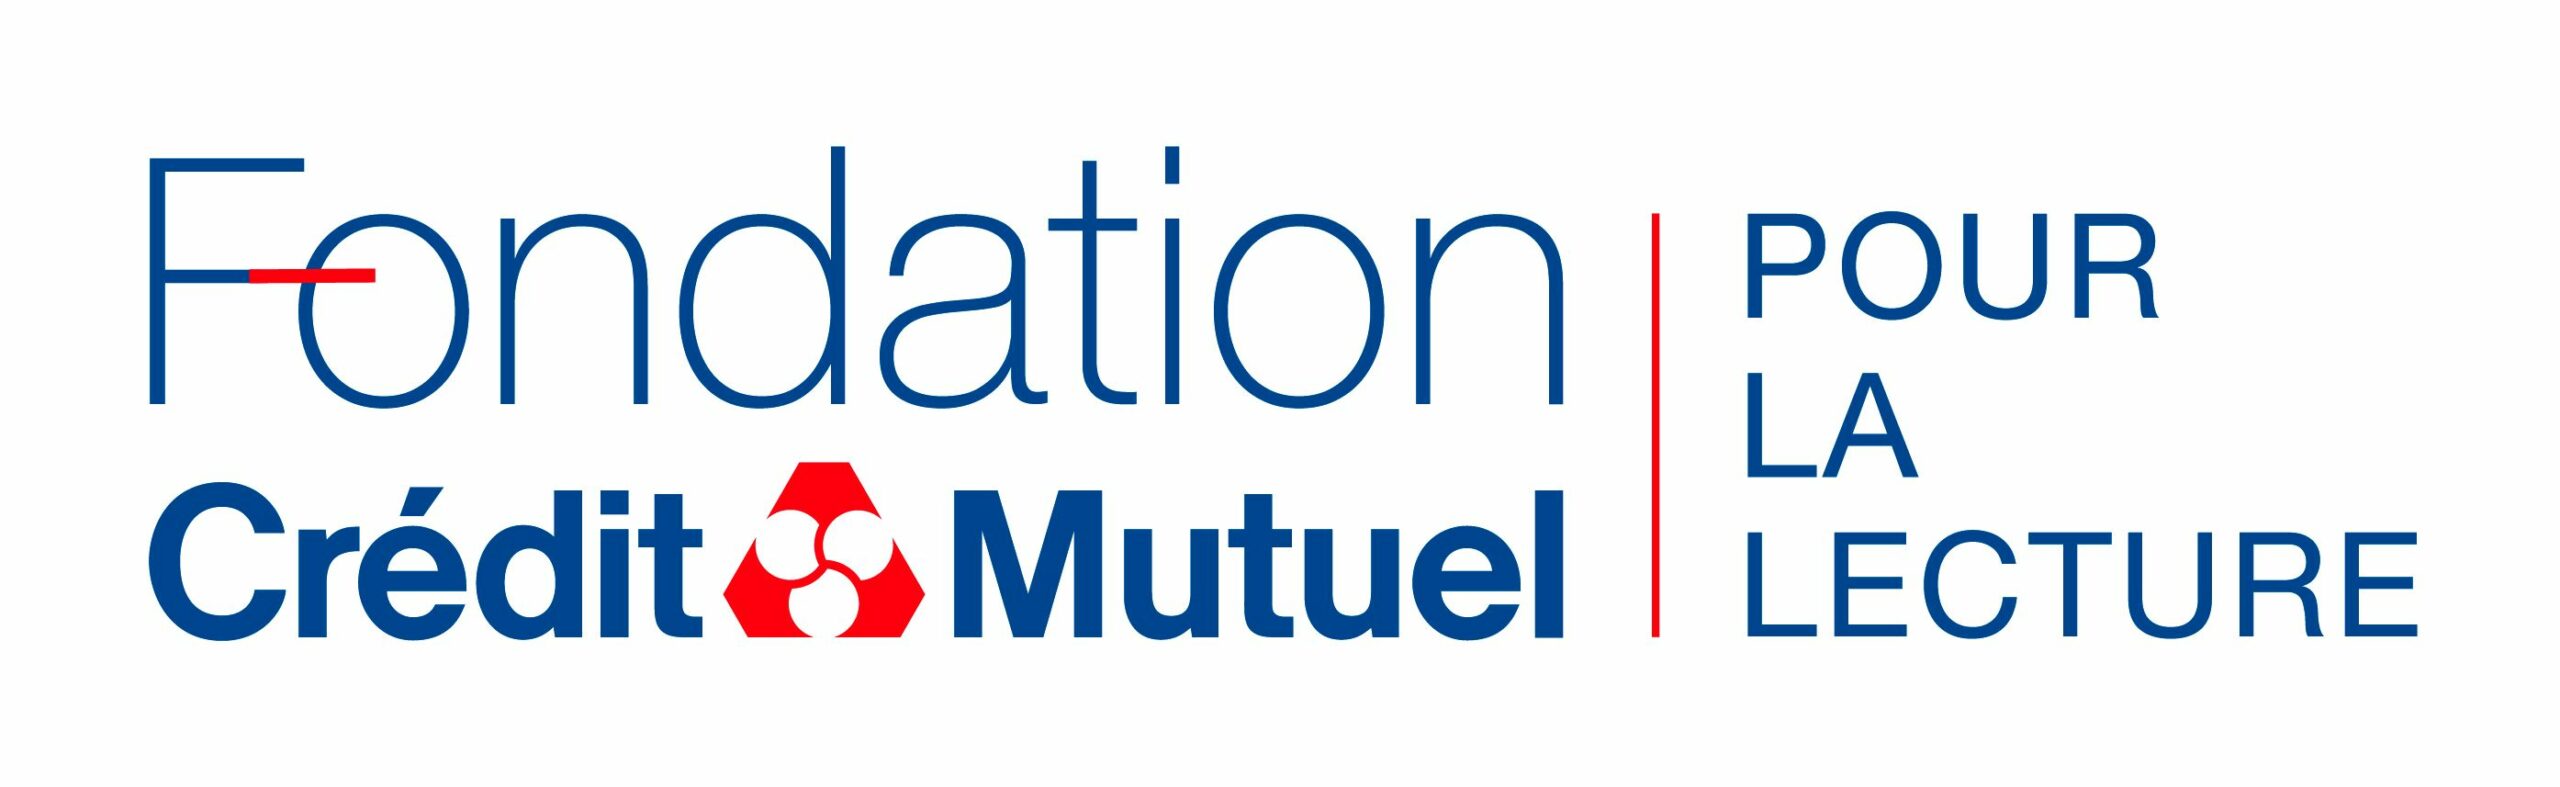 Logo Fondation Crédit mutuel pour la lecture